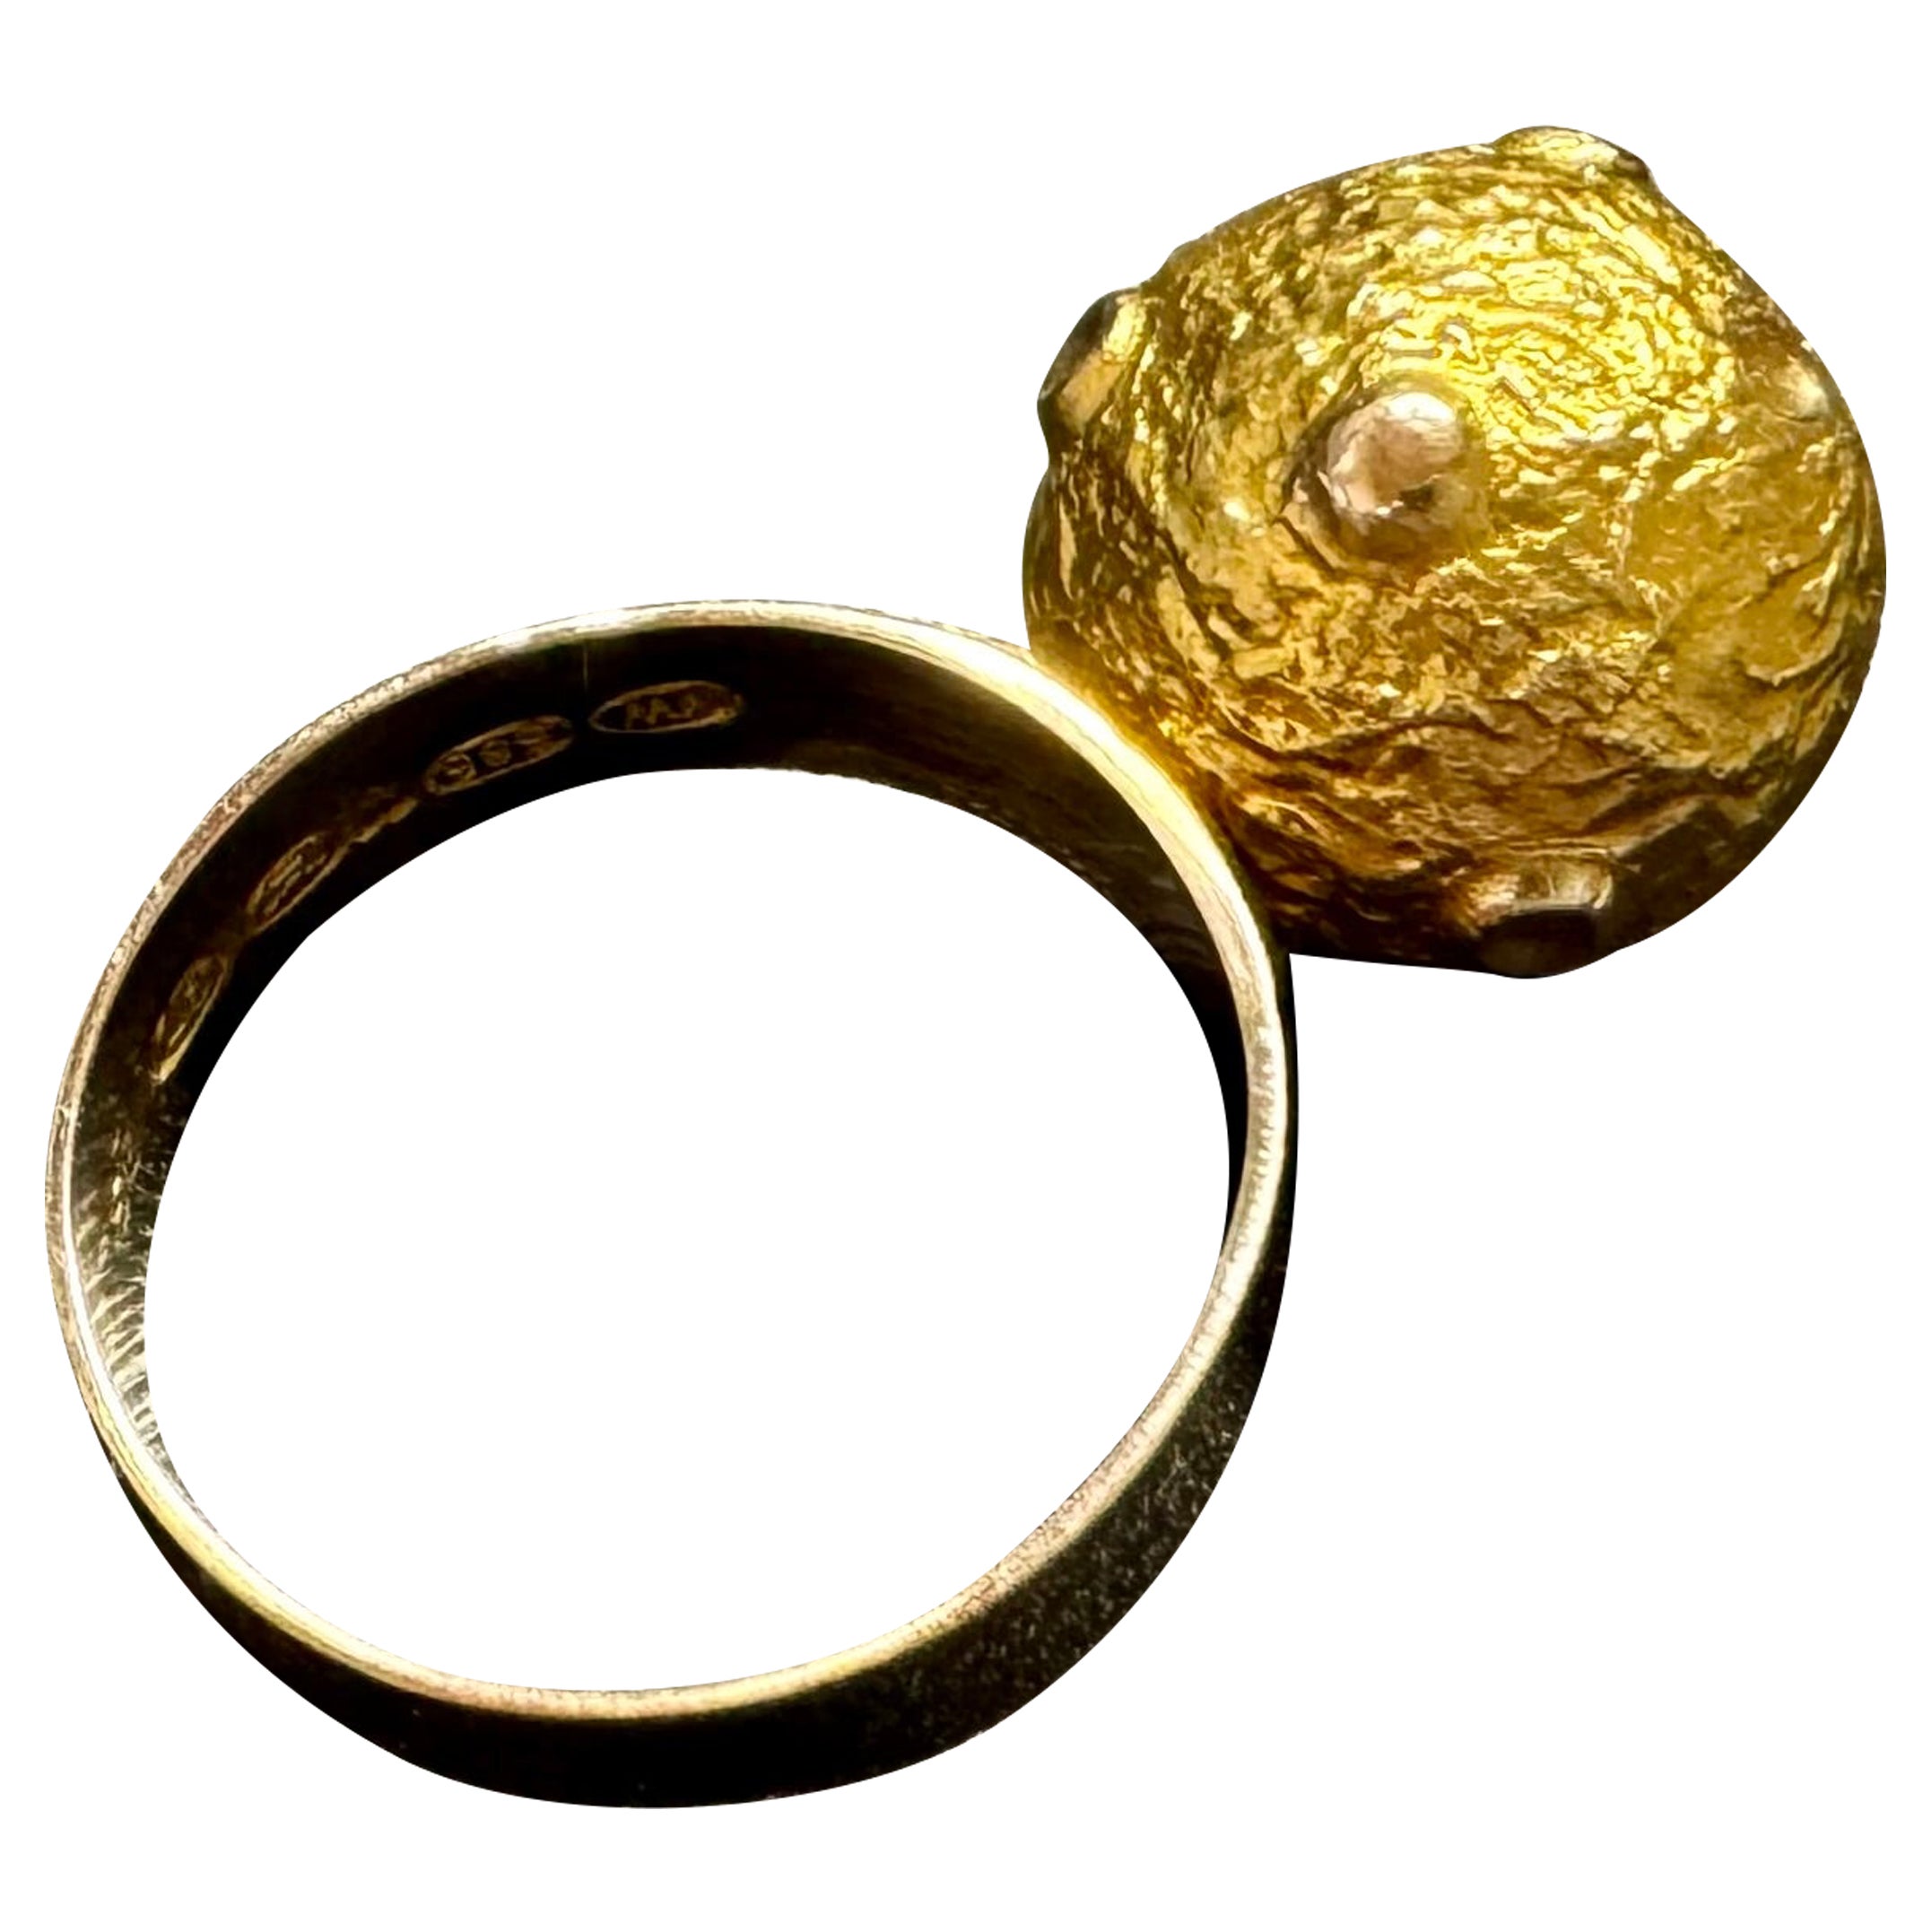 14 Karat Gold Ring Boris Sarvala 1967 Made in Finland.